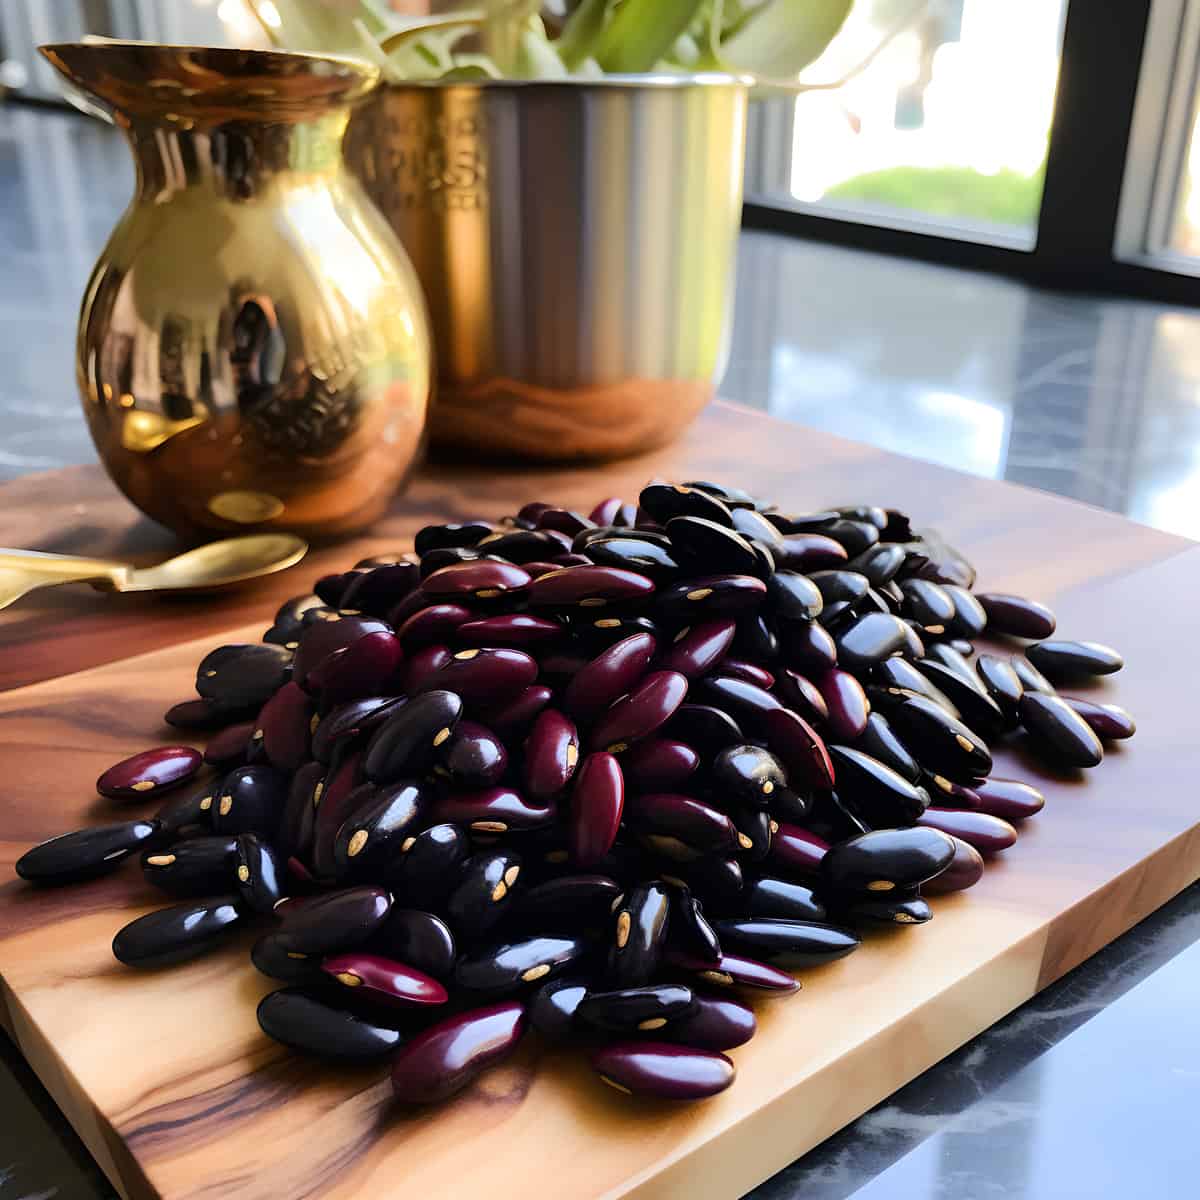 Velvet Beans on a kitchen counter